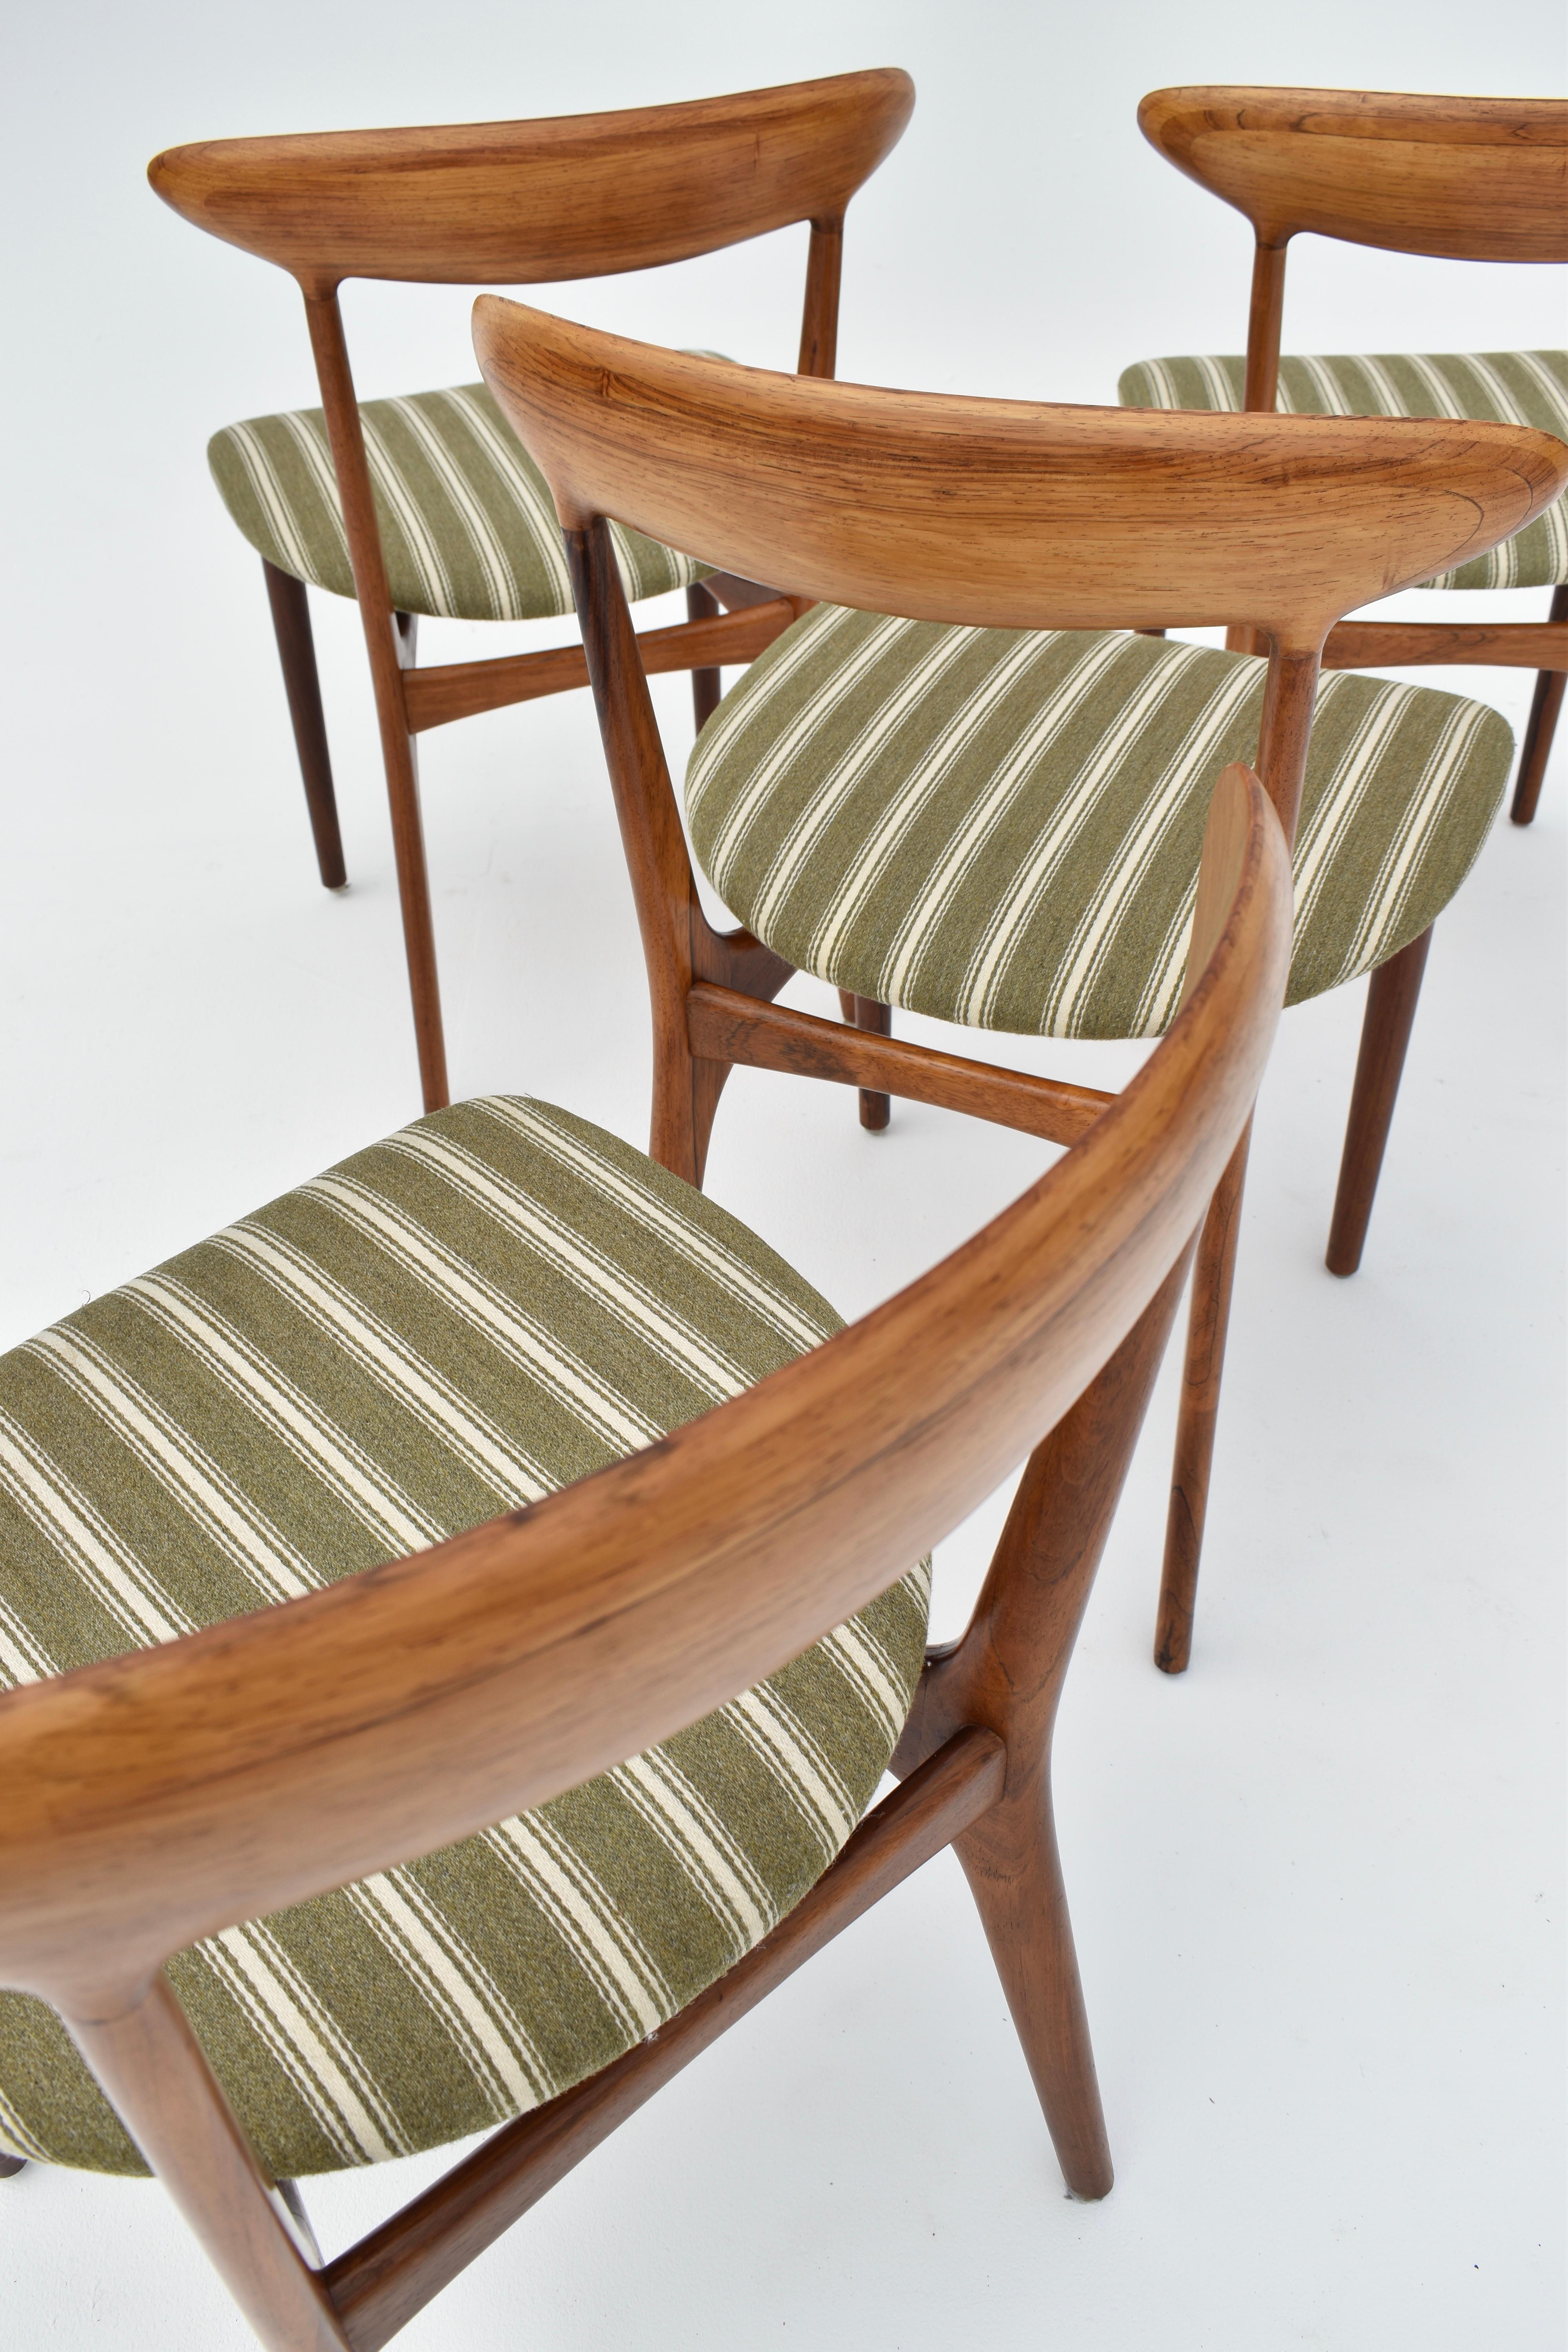 Exquisite und selten gesehene Esszimmerstühle, entworfen 1955 von Kurt Østervig für Brande Møbelindustri.

Ein sehr schönes und elegantes Design mit einer wunderbaren organischen Form. Dieses Viererset ist ein echtes Set mit aufeinanderfolgenden